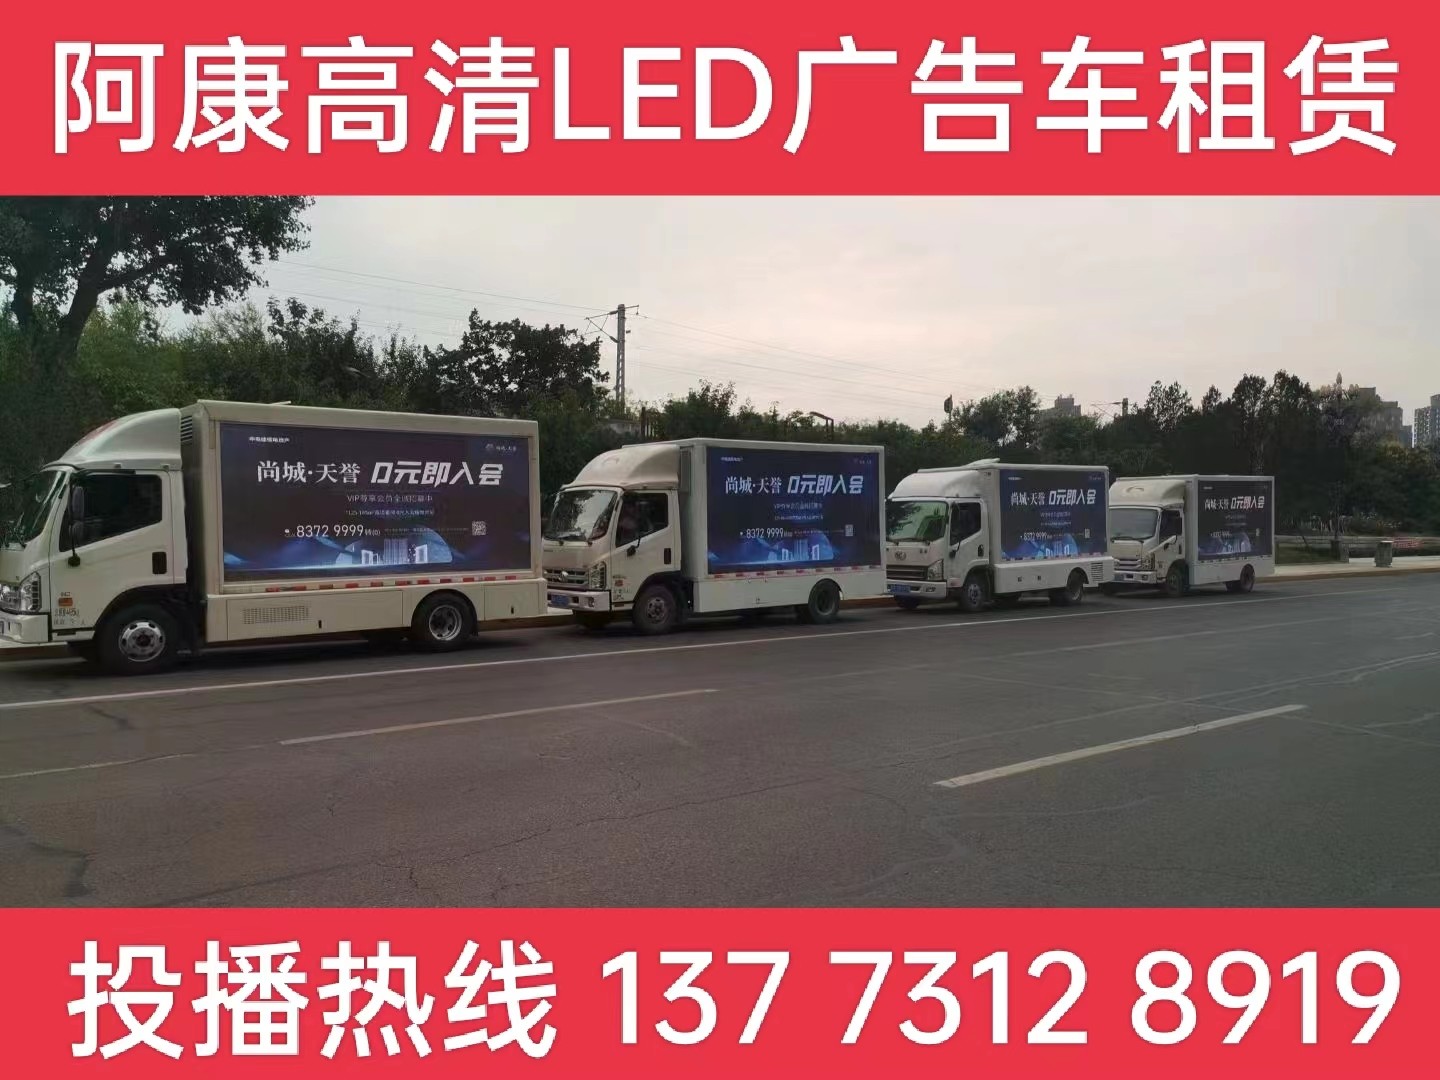 泰兴LED广告车出租公司